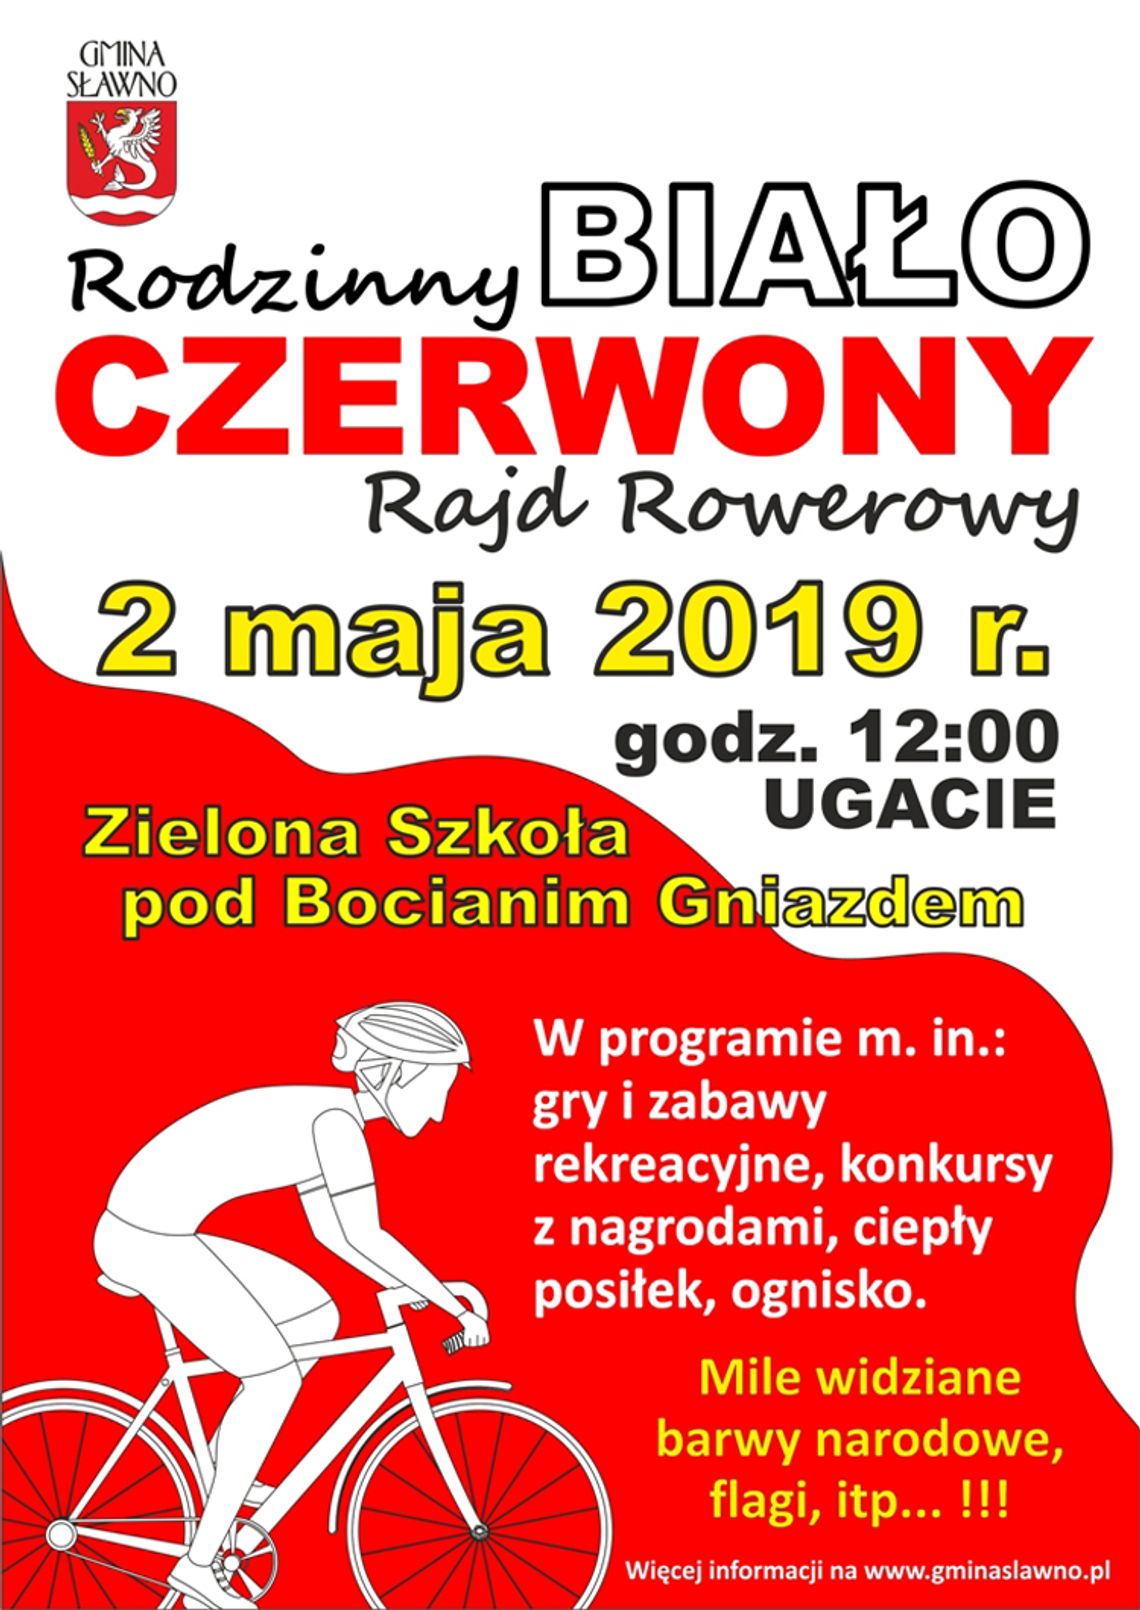 Gmina Sławno: Rodzinny Biało-Czerwony Rajd Rowerowy